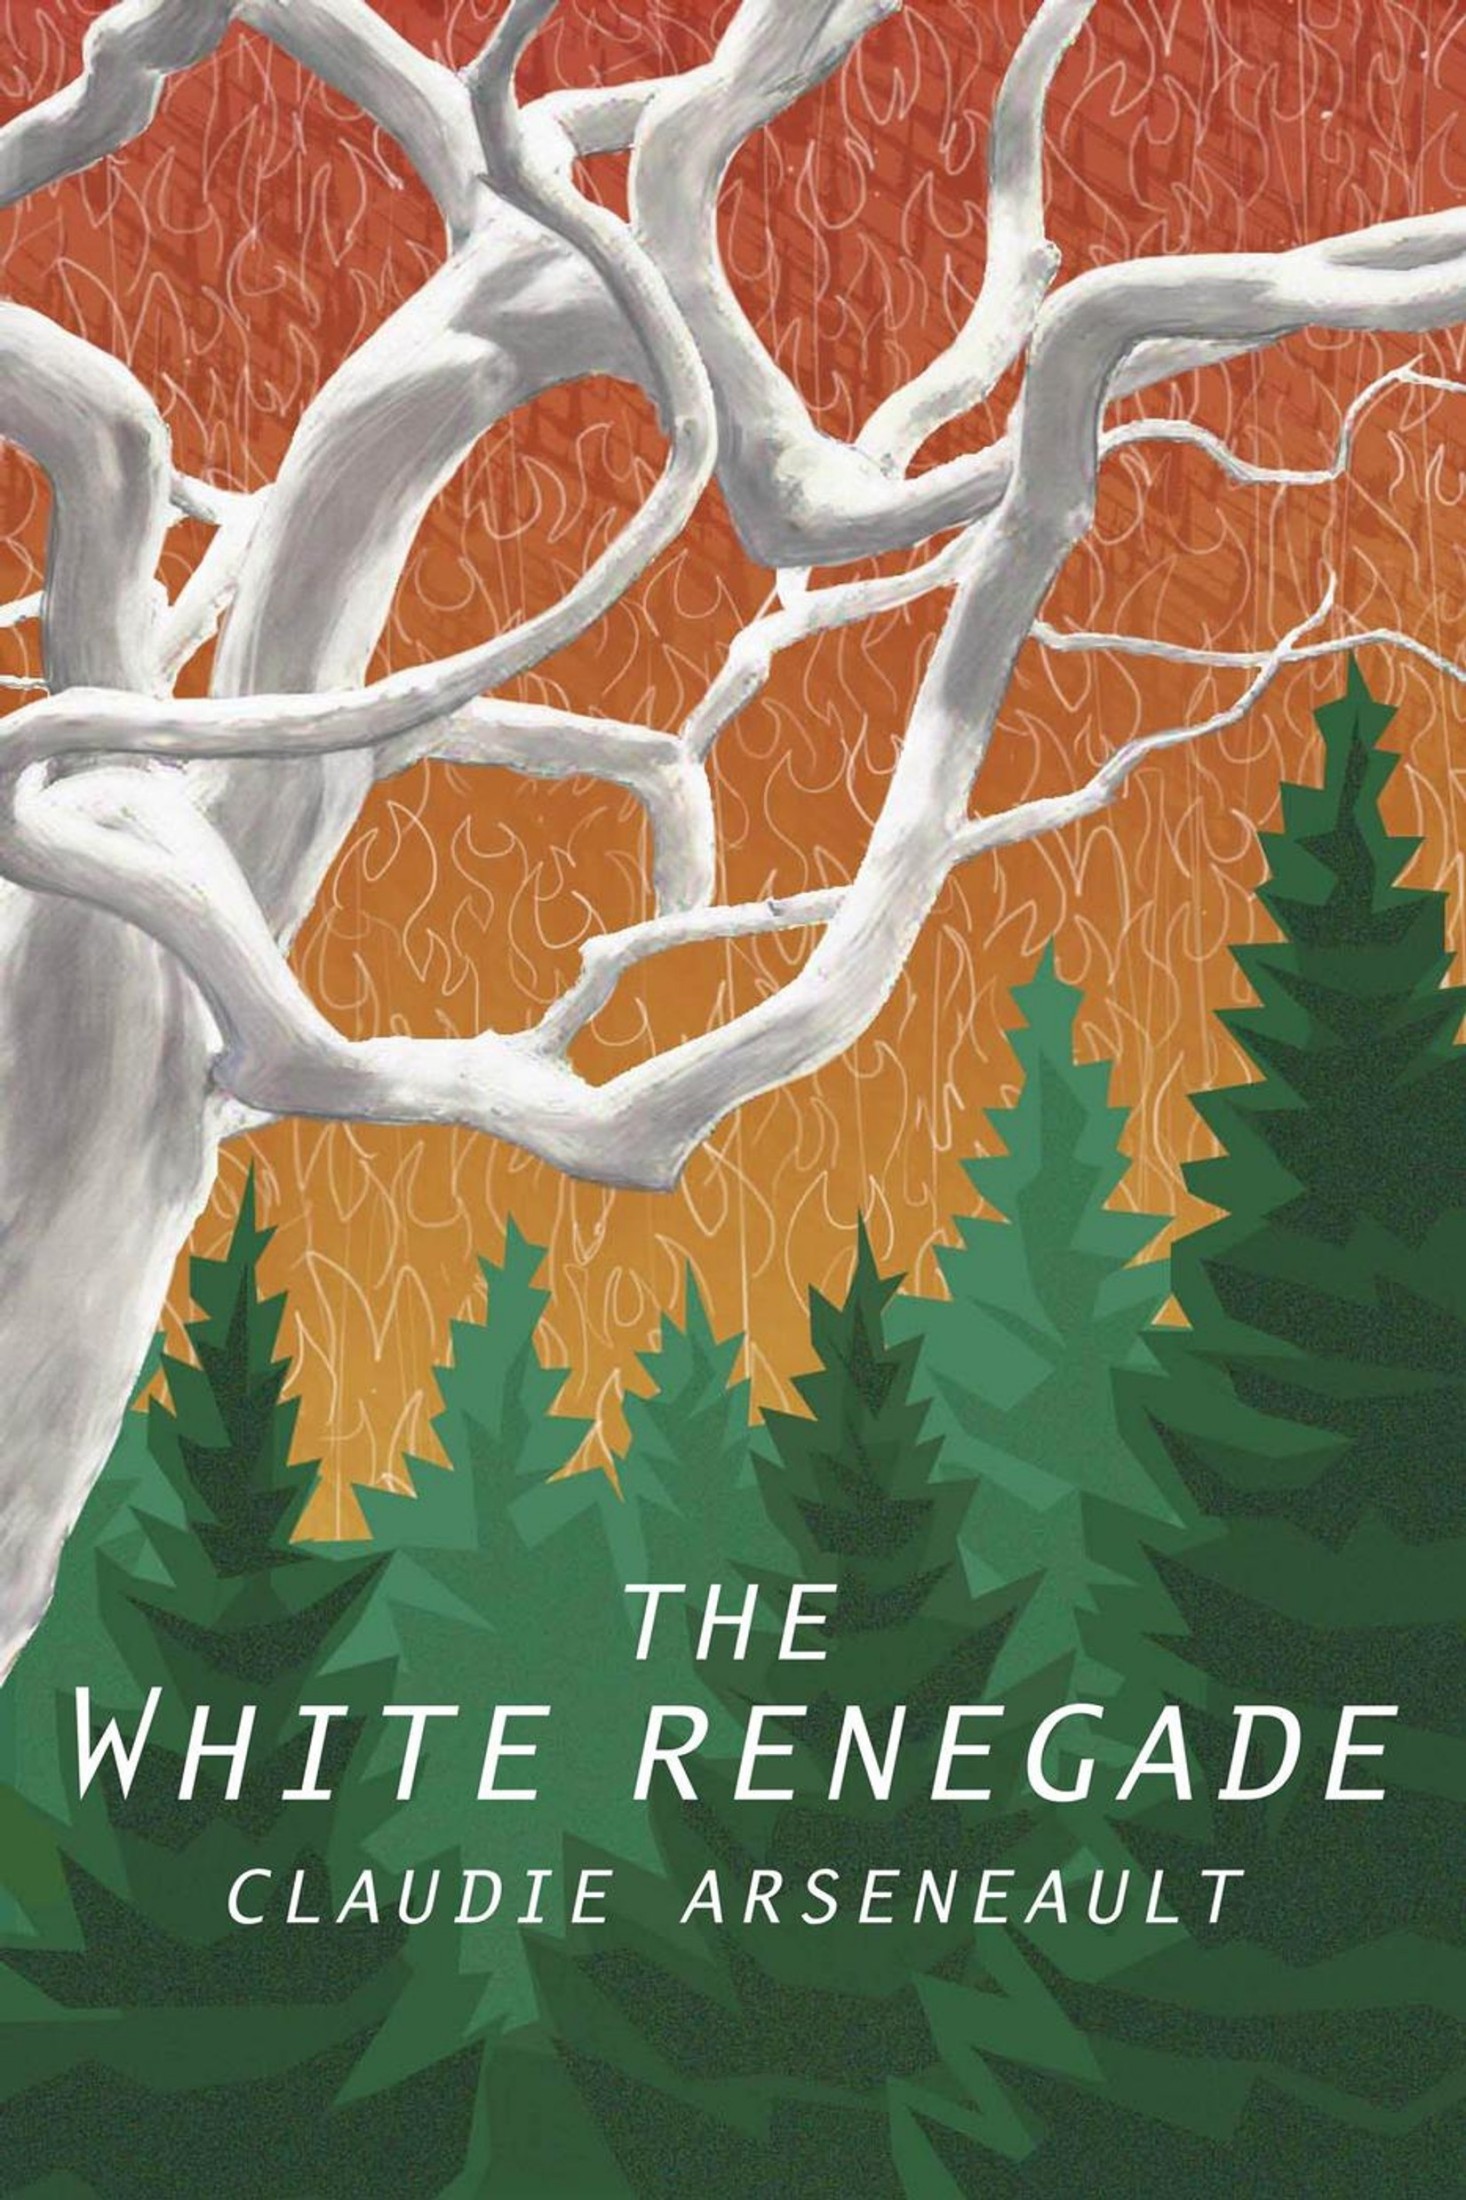 Claudie Arseneault: The White Renegade (2015)